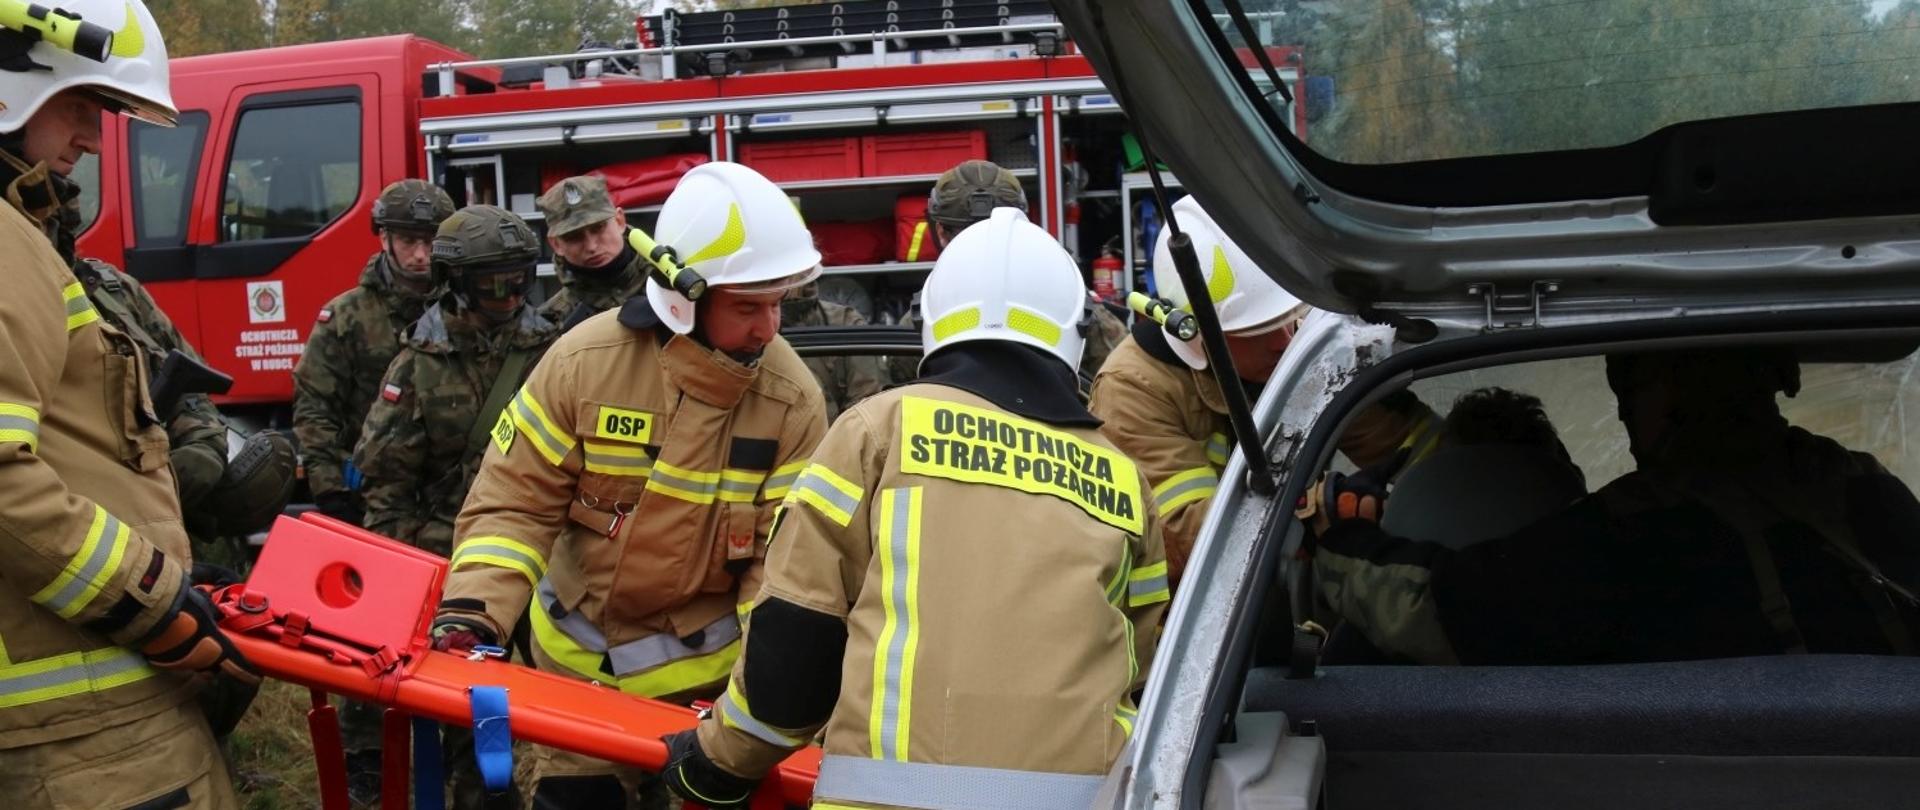 Zdjęcie przedstawia czterech strażaków ochotników podczas ewakuacji poszkodowanego z samochodu przy użyciu deski ortopedycznej. W tle żołnierze WOT i samochód ratowniczo-gaśniczy straży pożarnej 